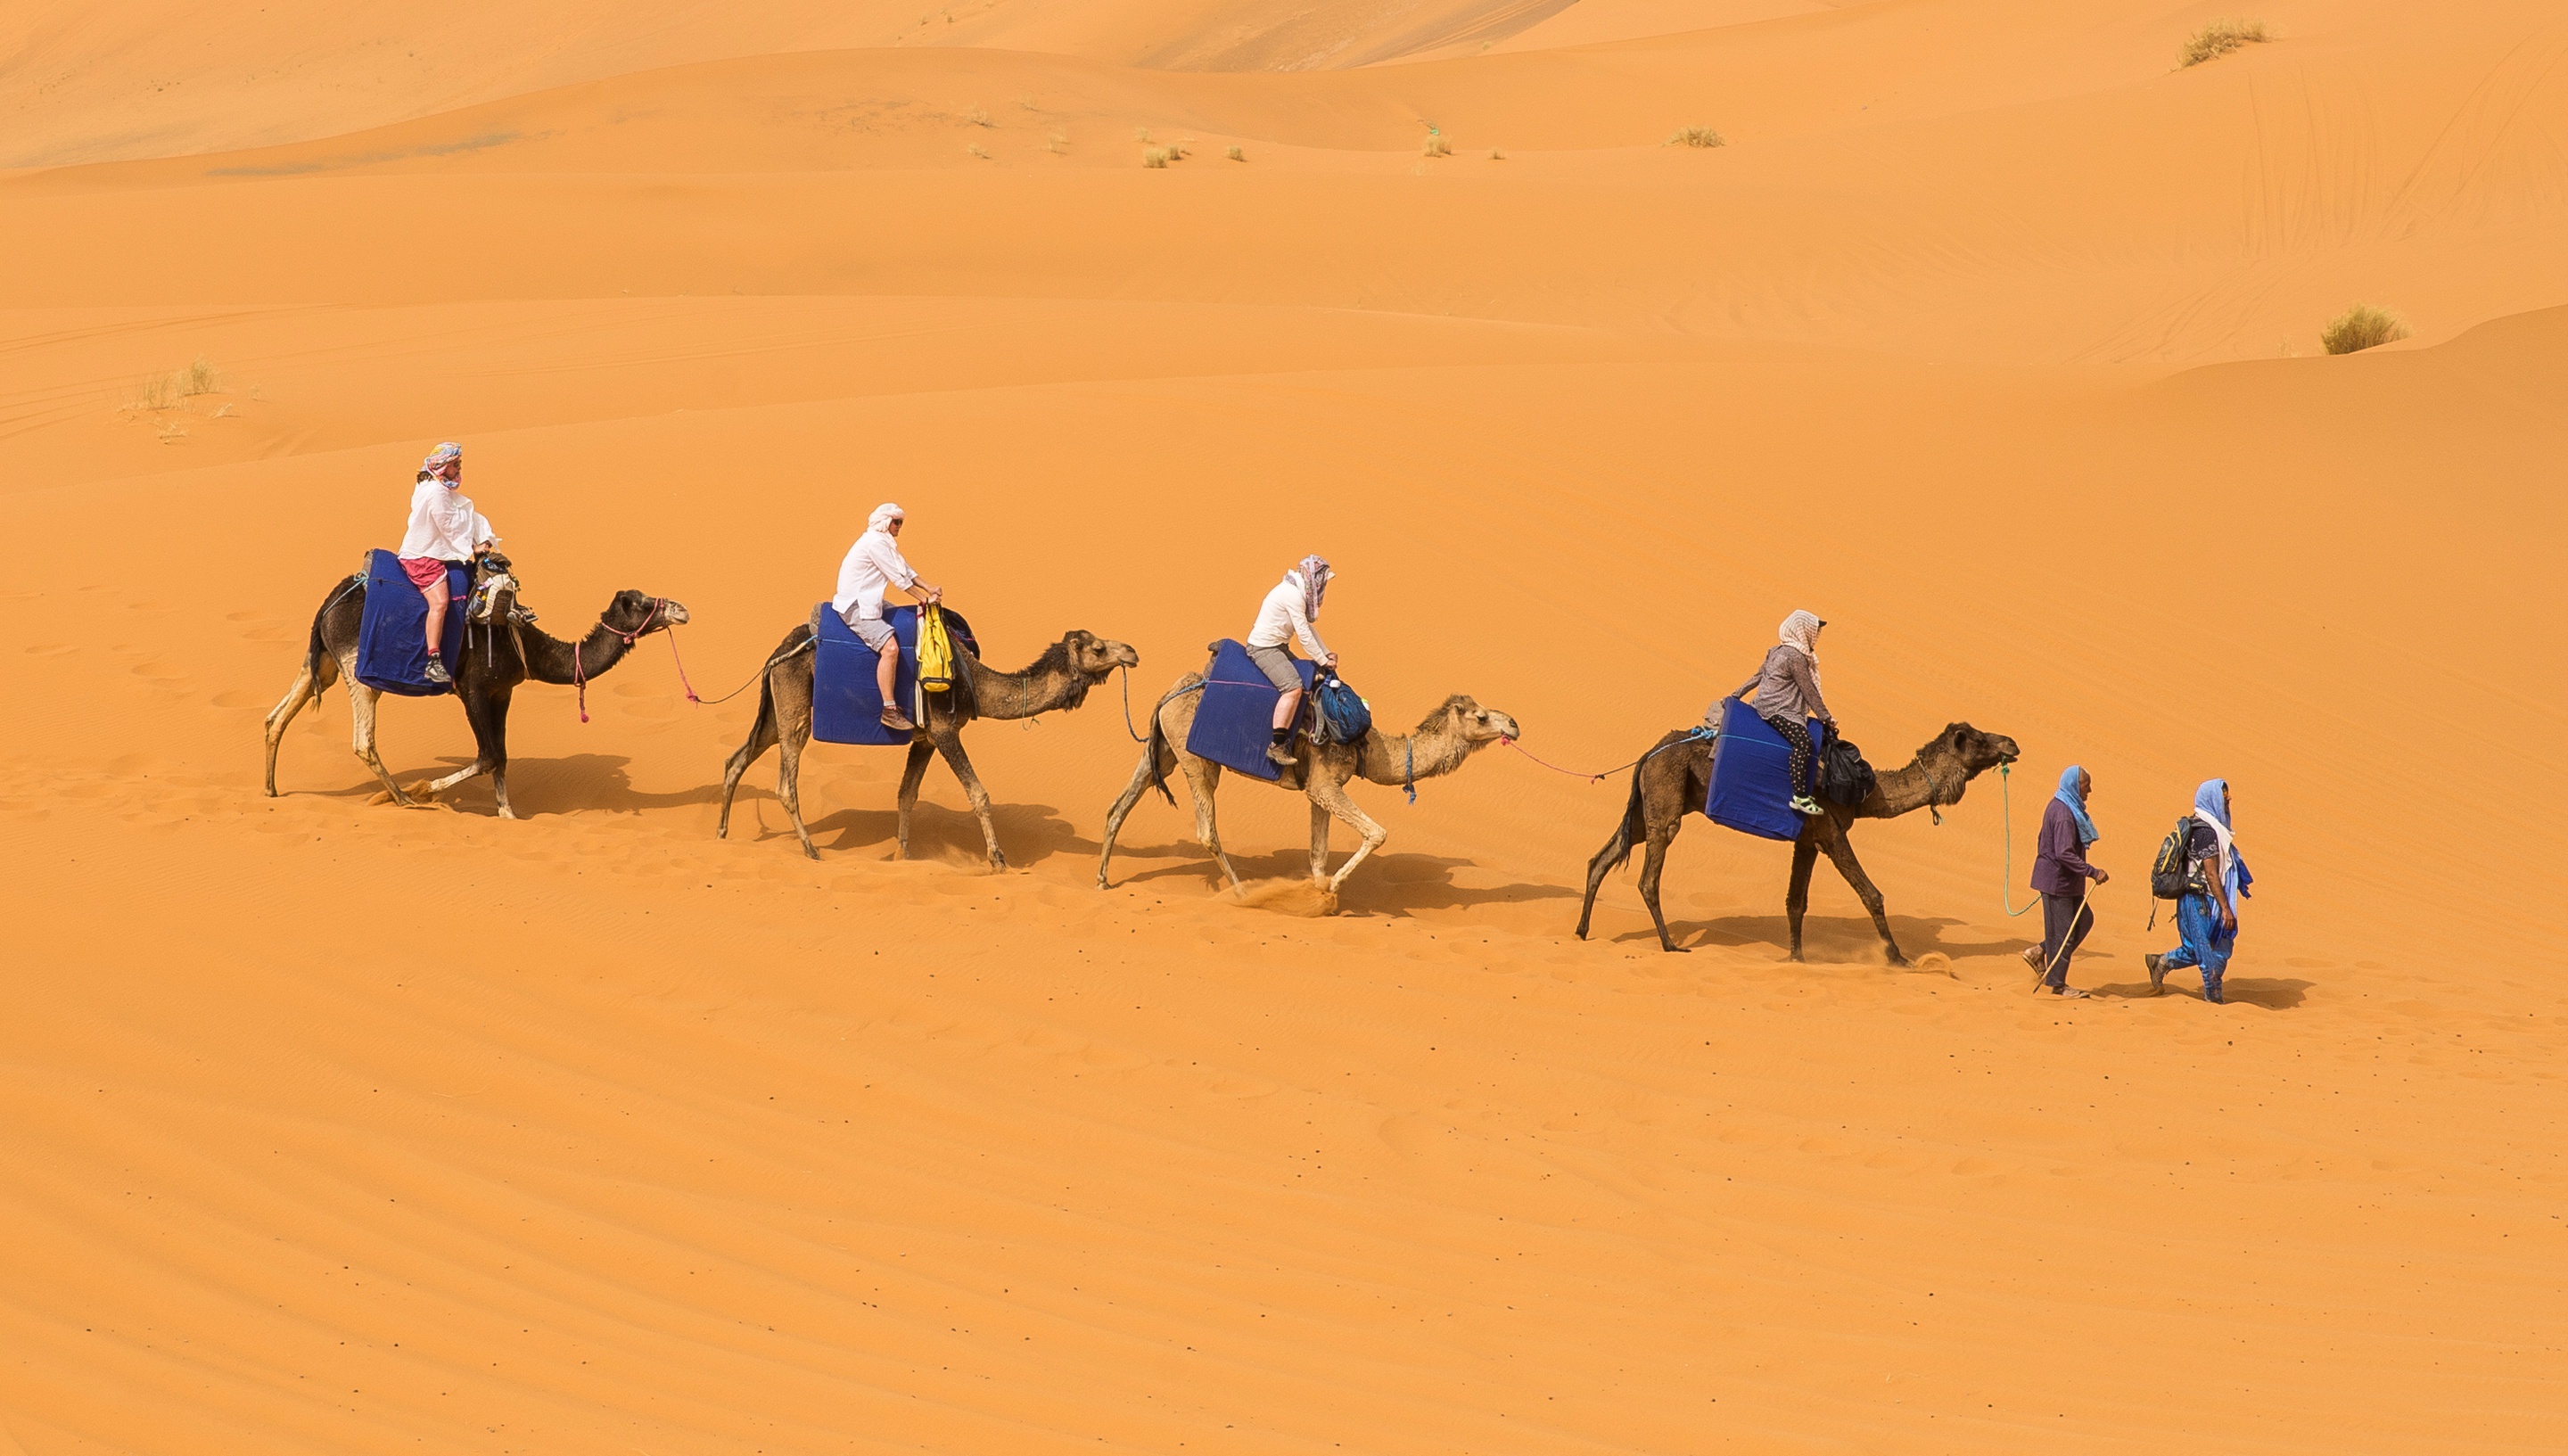 Караван сегодня. Мехари верблюд. Бедуин на верблюде. Караван с верблюдами в пустыне. Бедуин с верблюдом в пустыне.